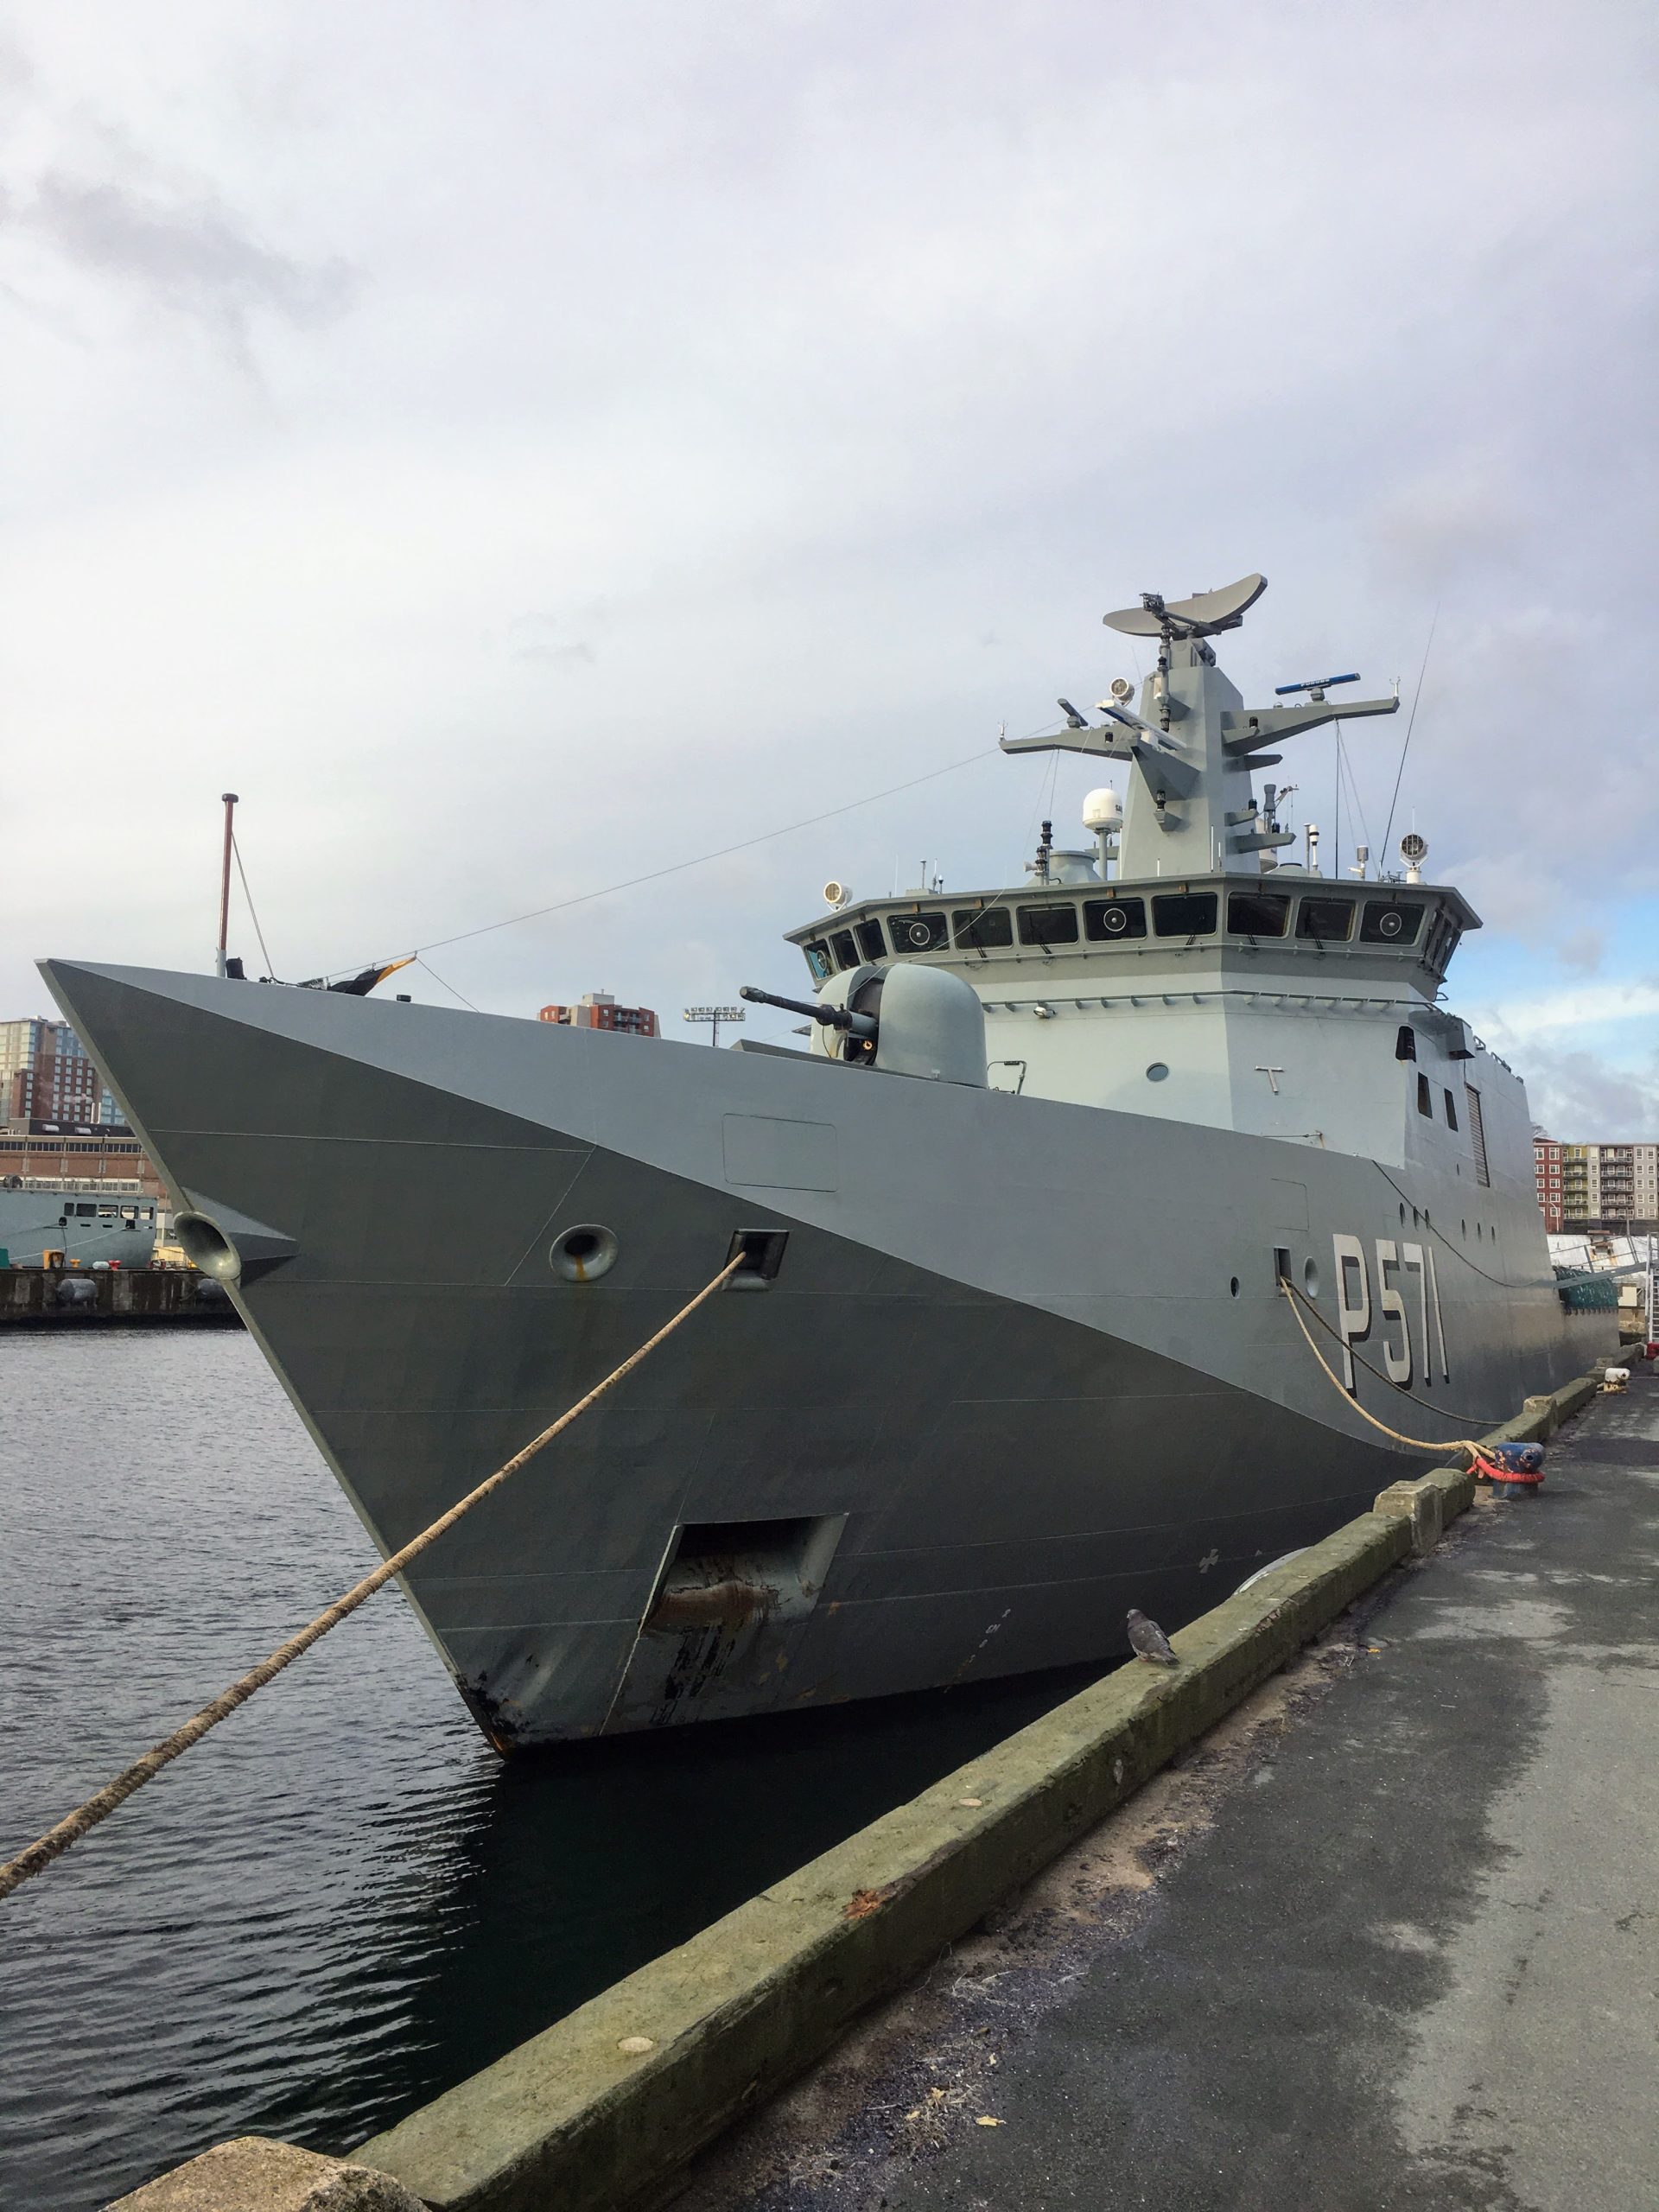 Patruljeskibet Ejnar Mikkelsen ligger til kaj i Halifax i Canada. Skibet besøgte Canada som led i et eksportfremstød af danske virksomheder, der mødtes med canadiske virksomheder for at udforske mulighederne for industrisamarbejde. Industrisamarbejde - også kendt som offset eller modkøb - handler om, at udenlandske virksomheder, der sælger forsvarsmateriel til dansk forsvar, får en modkøbsforpligtelse. Det betyder, at den udenlandske leverandør skal købe for det samme beløb hos danske virksomheder, som leverandøren har solgt for til dansk forsvar. Sådan fungerer industrisamarbejde dog ikke i praksis. I stedet er der opbygget et kompliceret system, som værdisætter modkøbene efter, hvad og hvor meget den udenlandske leverandør investerer i sin danske partner, og hvor meget den udenlandske leverandør køber hos sin danske partner. Industrisamarbejde administreres af Erhvervsstyrelsen, som skal godkende al industrisamarbejde, både det der er baseret på køb på faktura og det industrisamarbejde, der er baseret på udviklingsprojekter. Industrisamarbejde som udviklingsprojekt er det mest attraktive for den udenlandske leverandør, da modkøbet kan ganges med faktorer alt efter arten. Eksempelvis giver overførsel af teknologi og viden faktoren syv, og så bliver det lettere og billigere for den udenlandske leverandør at overholde sin modkøbsforpligtelse via industrisamarbejde. I industrisamarbejde giver direkte investeringer i danske virksomheder faktor fem. I industrisamarbejde giver også rådgivning faktor fem, mens den udenlandske leverandør kan få faktor tre for at stille faciliteter til rådighed for sin danske partner i industrisamarbejde. Det meste industrisamarbejde i Danmark udføres af amerikanske virksomheder. Industrisamarbejde spiller en meget vigtig rolle i udvikling og vækst i dansk forsvarsindustri, da danske forsvarsvirksomheder er meget små og derfor afhængige af industrisamarbejde med udenlandske partnere. Erhvervsstyrelsen udgiver hvert år en rapport om industrisamarbejde, som i detaljer beskriver hvordan industrisamarbejdet er sat sammen. Man kan finde rapporten om industrisamarbejde på Erhvervsstyrelsens hjemmeside. Da rapporten om industrisamarbejde er til Folketinget, kan man også finde rapporten på Folketingets hjemmeside. Da dansk forsvar i de kommen år vil øge sine indkøb markant, betyder det, at kravet om modkøb og dermed industrisamarbejde vil stige tilsvarende. Der er derfor gode muligheder for danske virksomheder, der vil styrke forretnings på forsvarsmarkedet via industrisamarbejde.